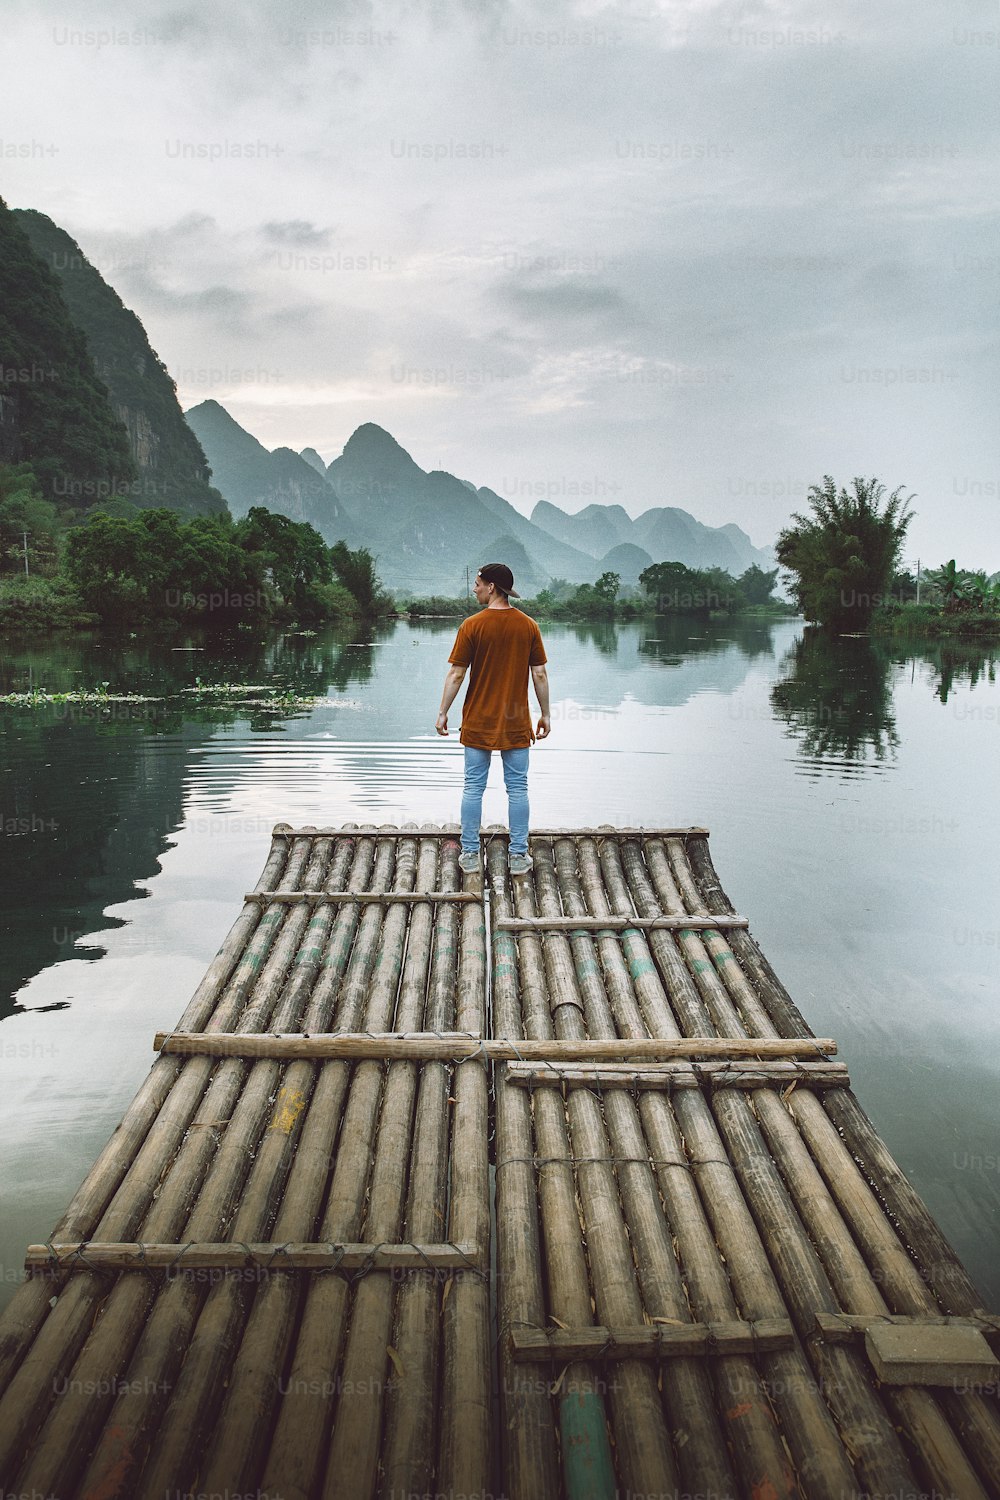 Una persona in piedi su una zattera di bambù nel mezzo di uno specchio d'acqua